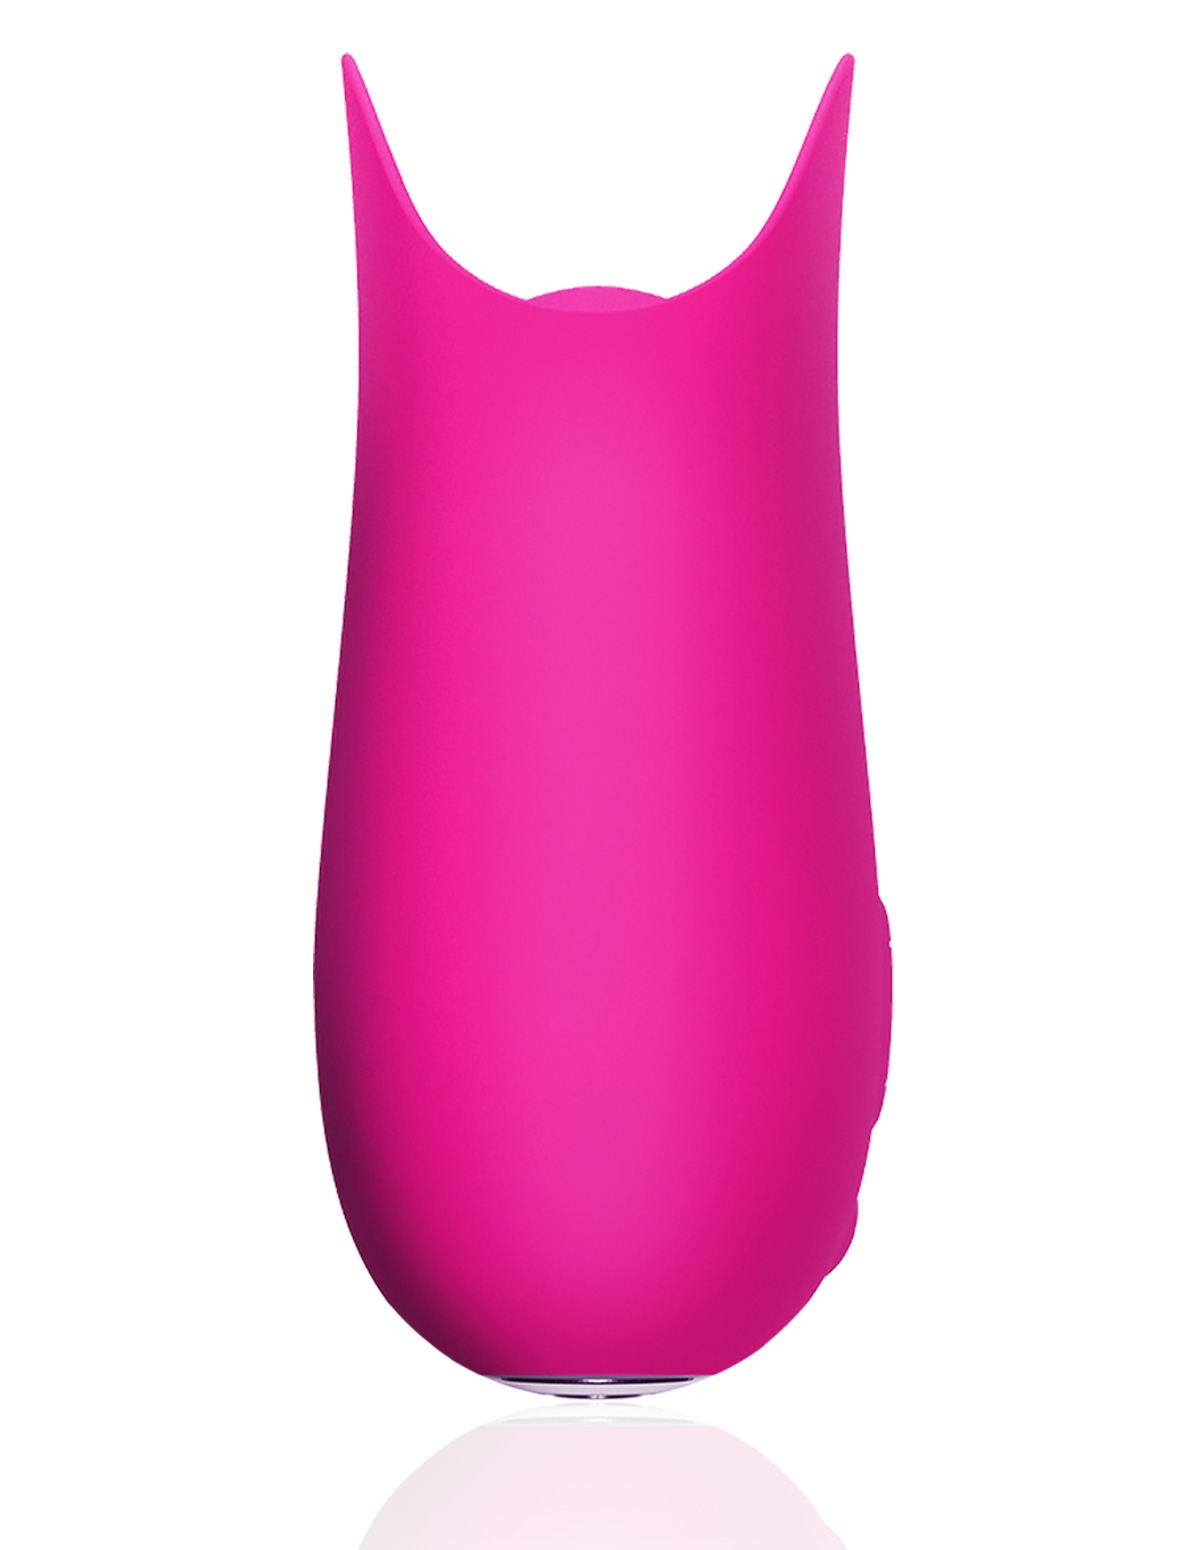 alternate image for Form 5 Vibrator Pink